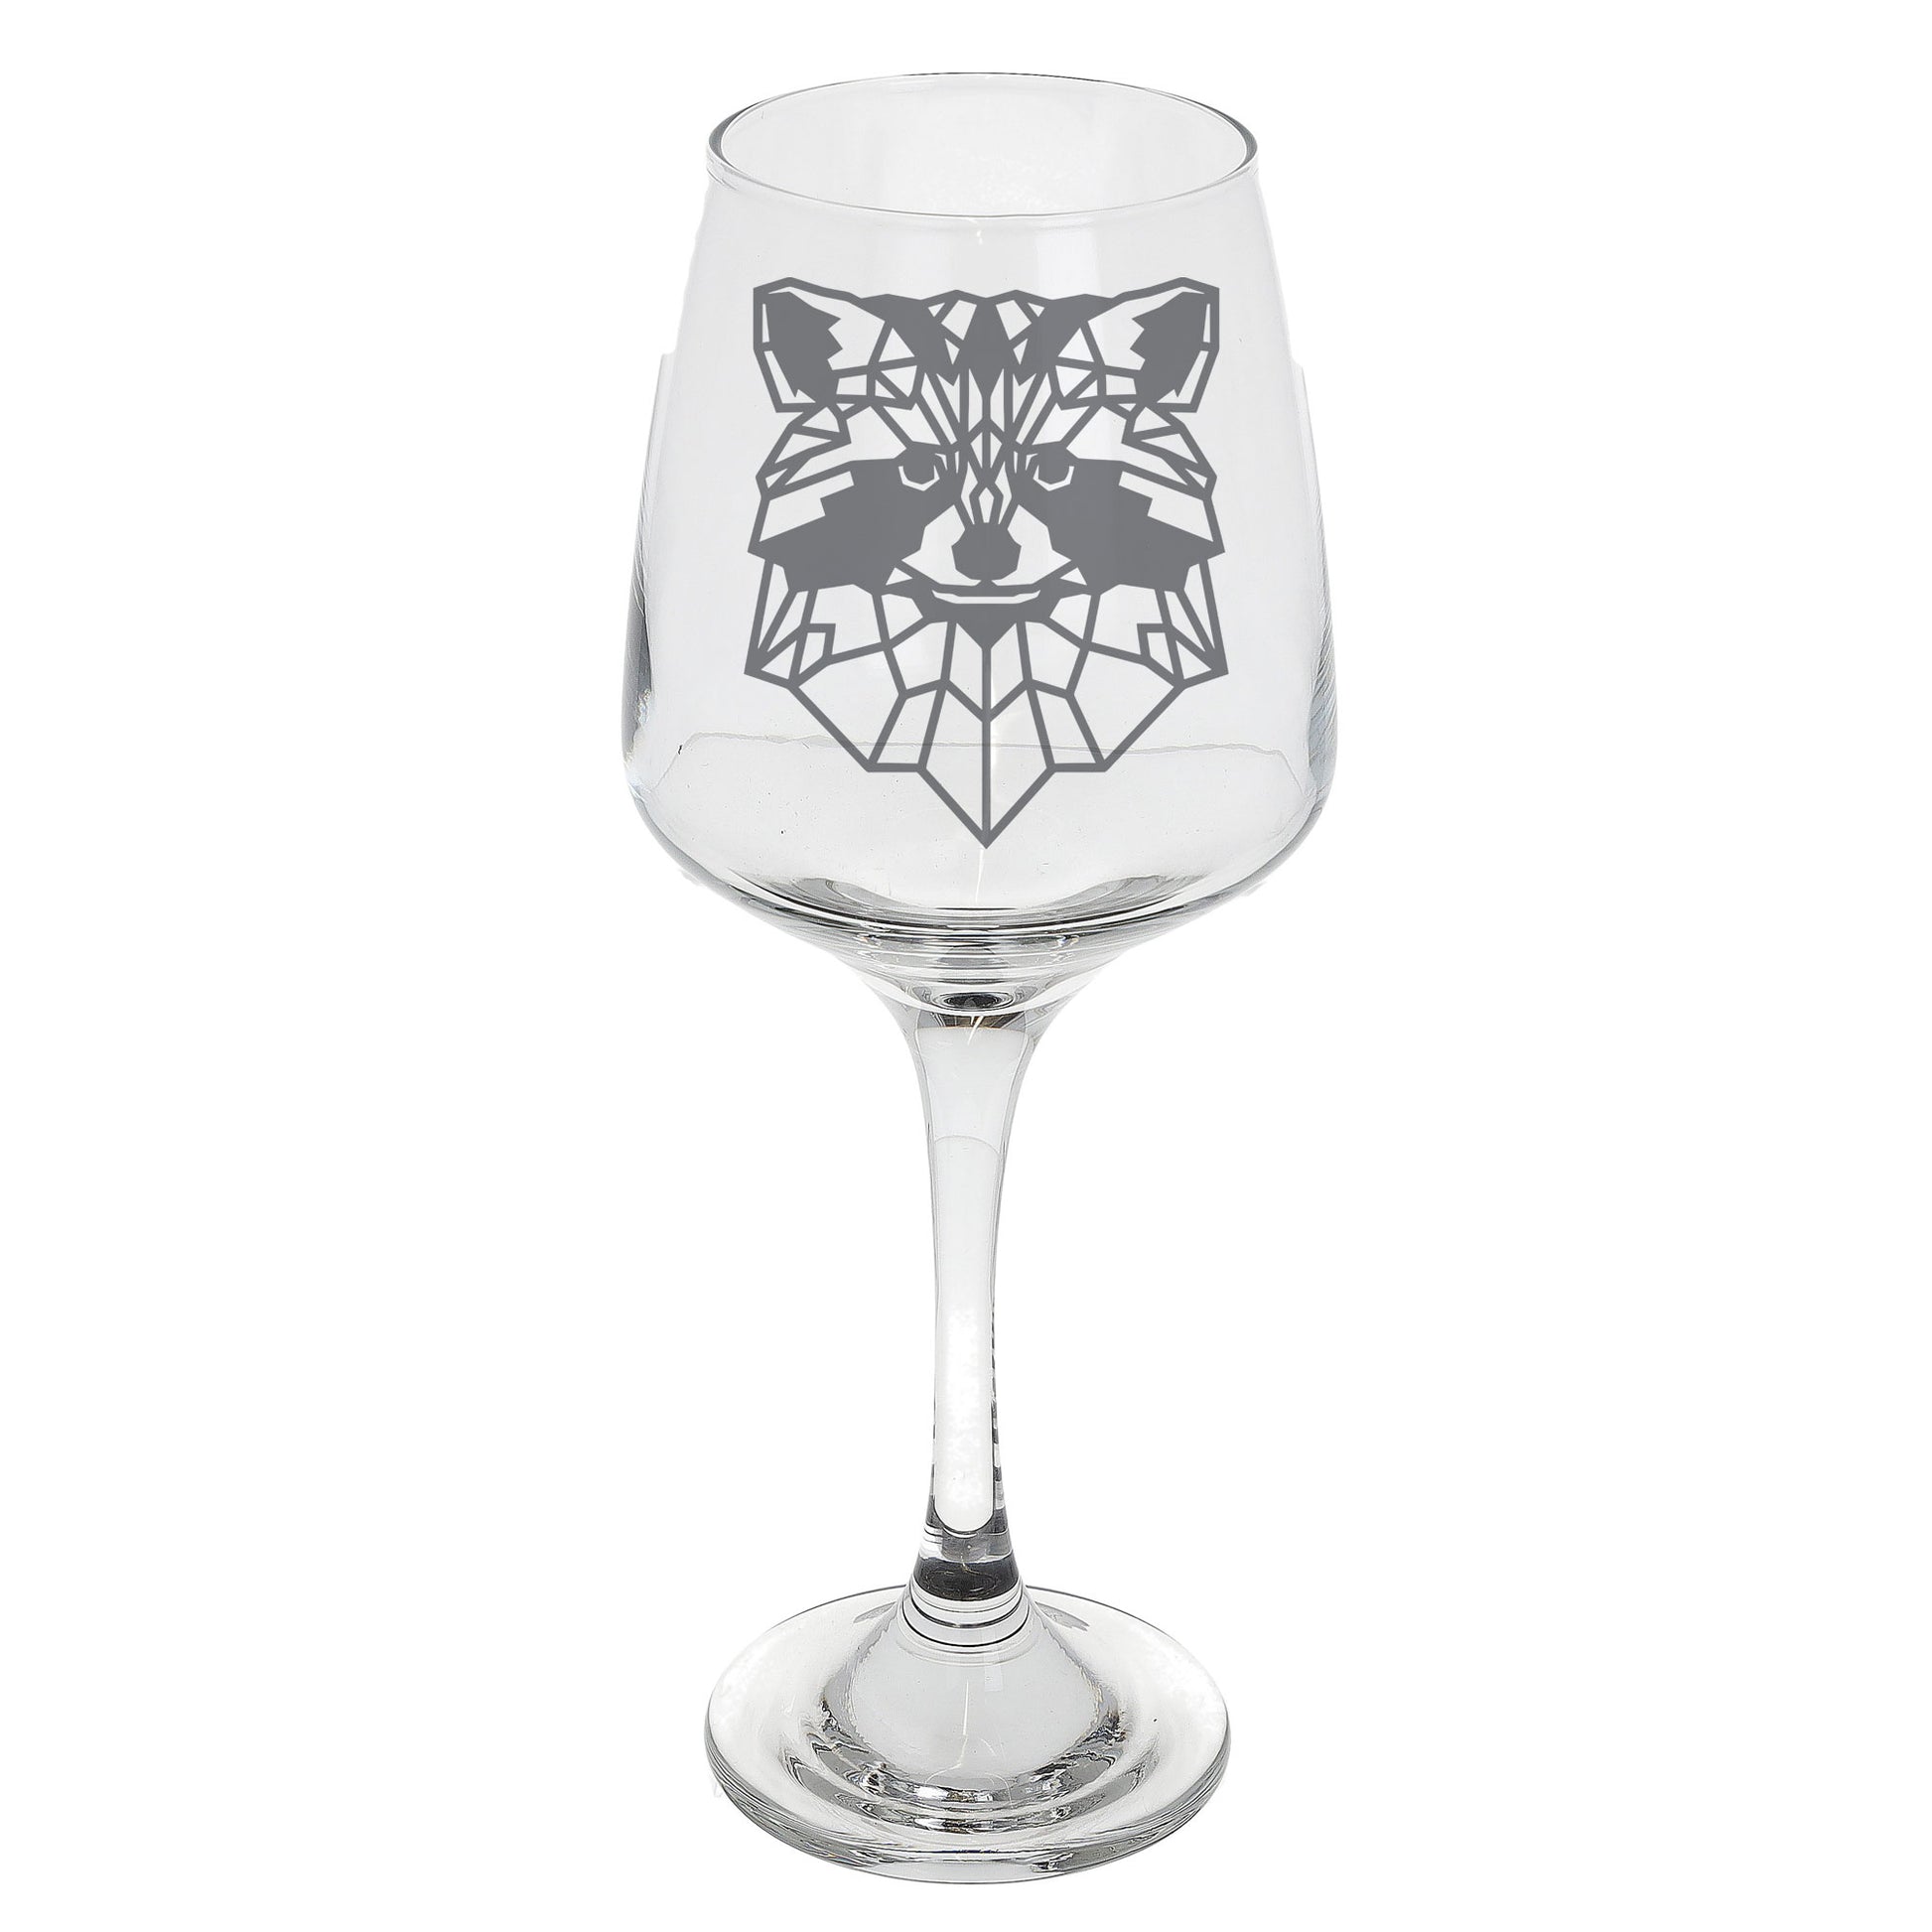 Raccoon Engraved Wine Glass  - Always Looking Good -   